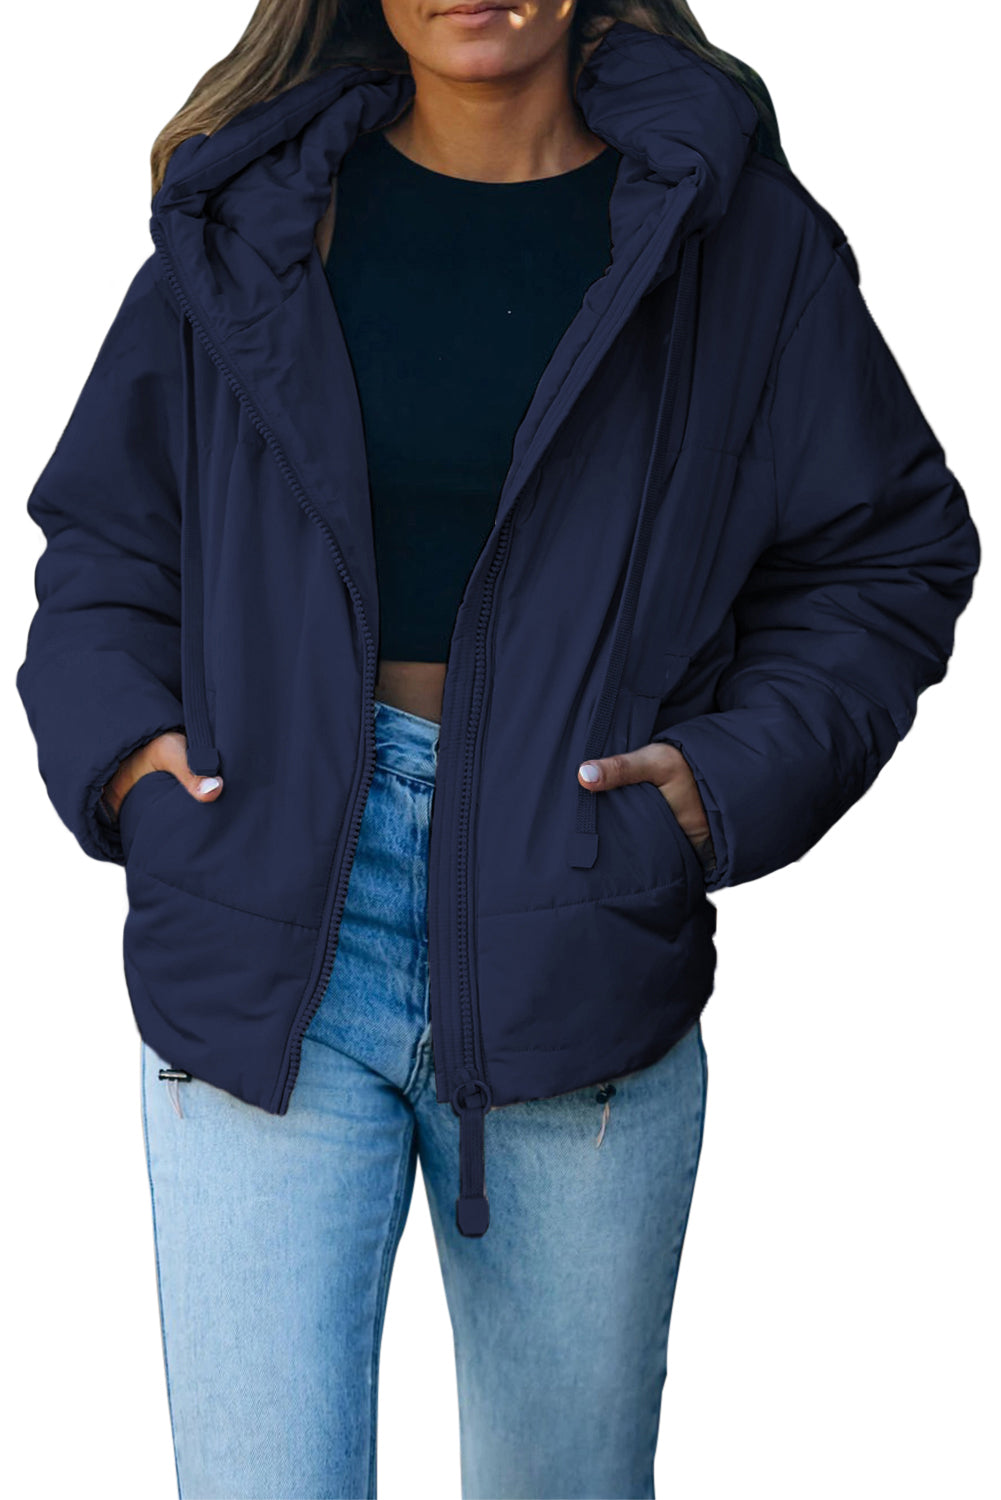 LC856045-5-S, LC856045-5-M, LC856045-5-L, LC856045-5-XL, LC856045-5-2XL, Blue Winter Coats for Women Outdoor Zipper Hooded Coat Outwear with Pockets